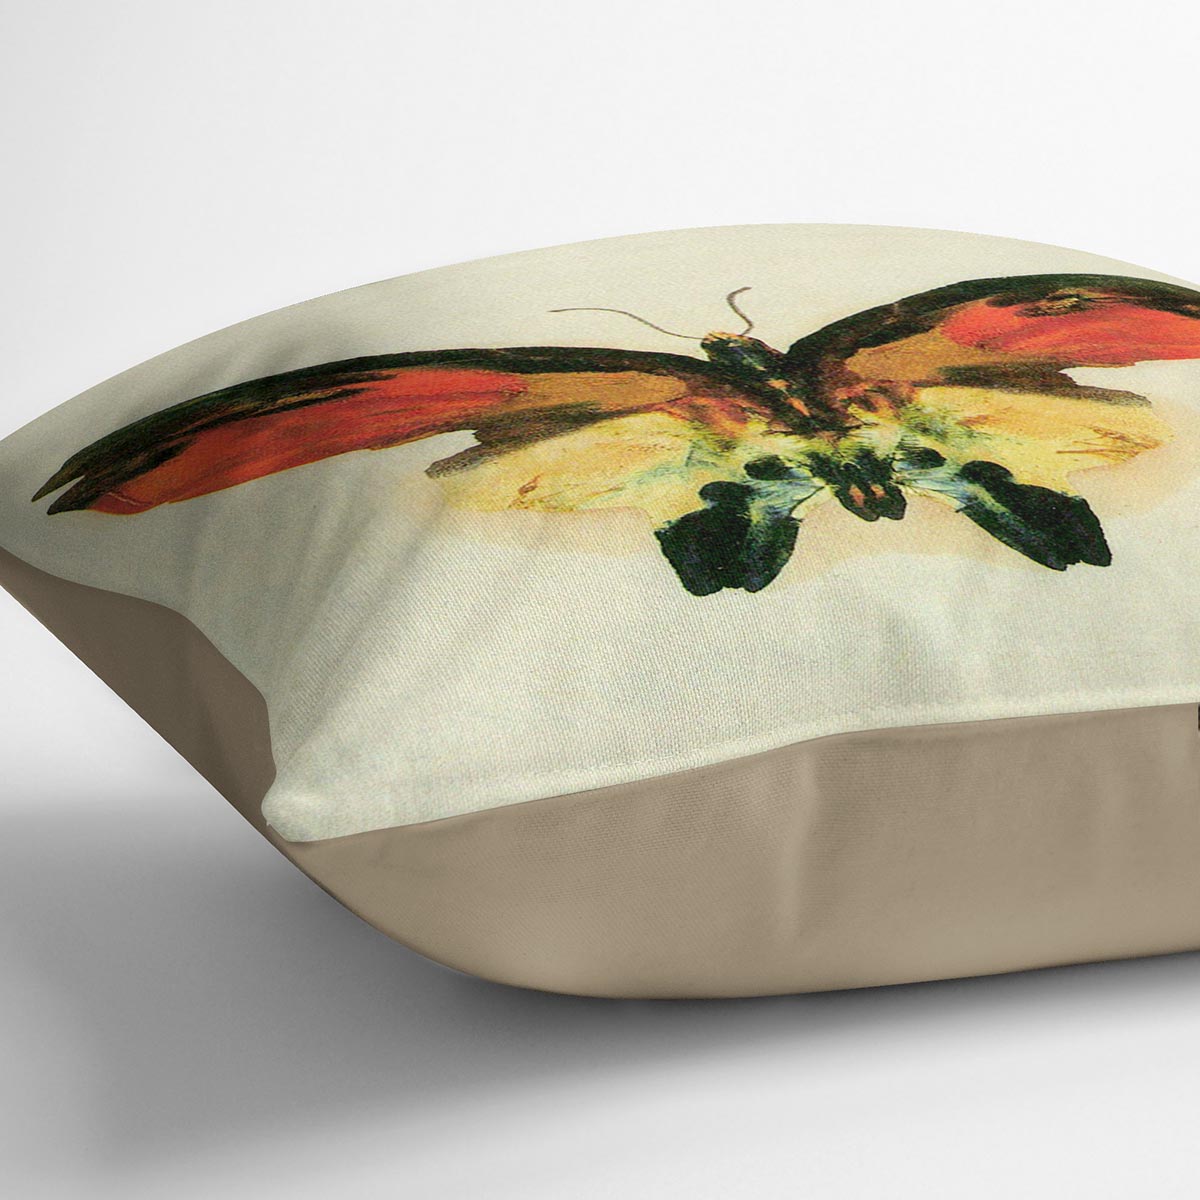 Butterfly 2 by Bierstadt Cushion - Canvas Art Rocks - 2